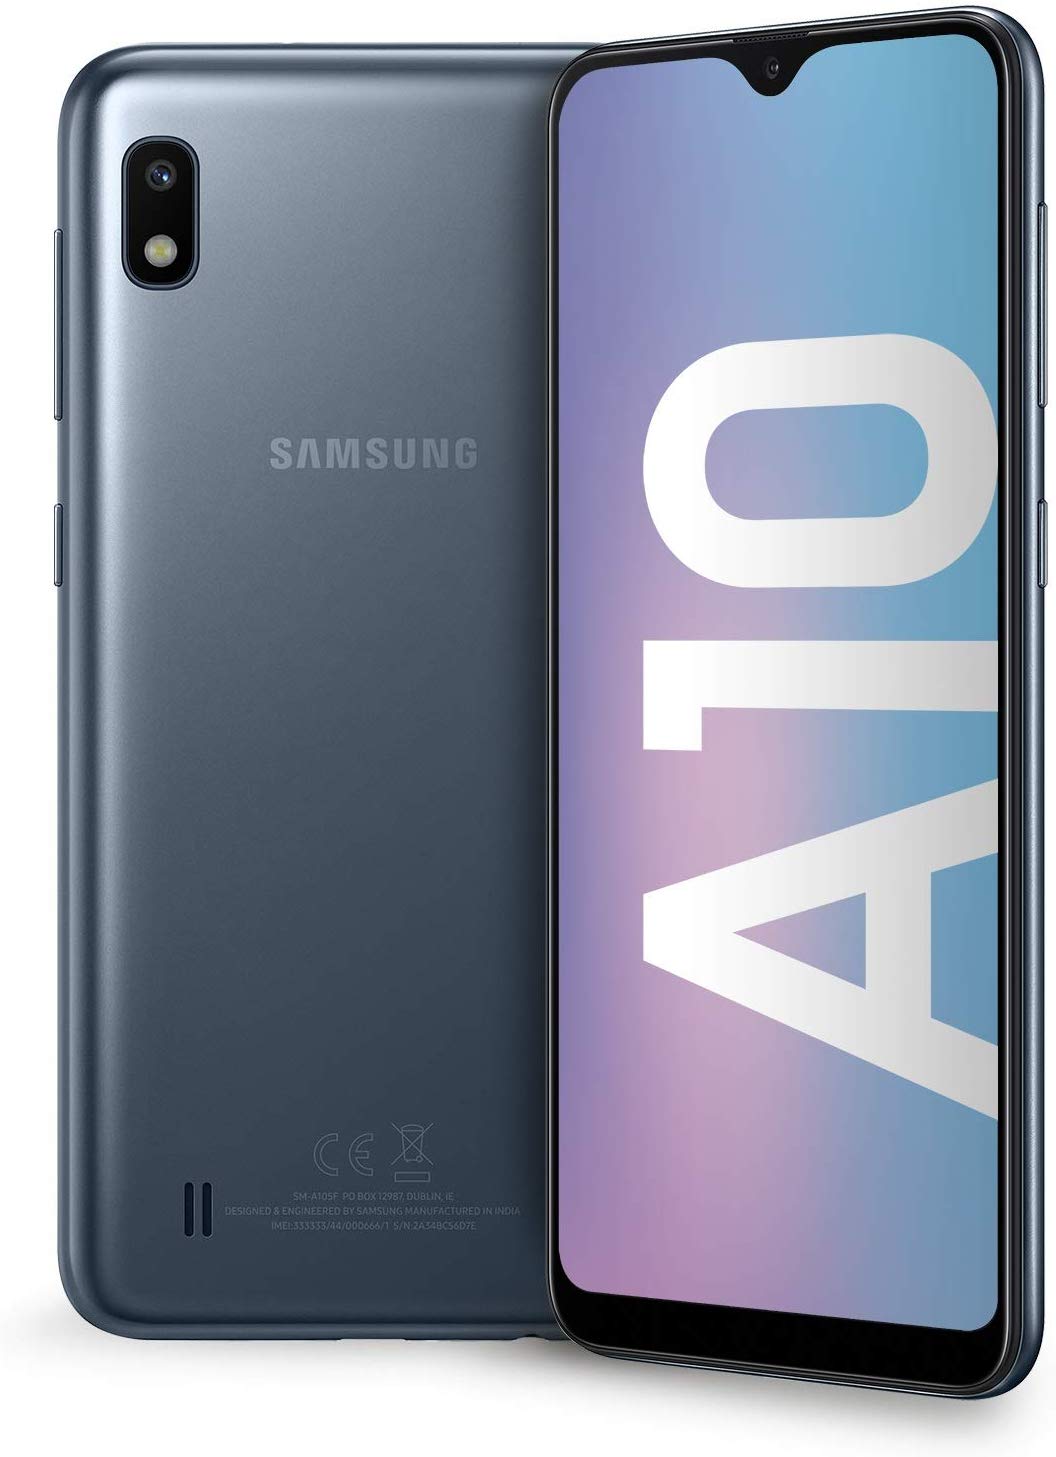 Samsung Galaxy A10 Smartphone, Display 6.2" HD+, 32 GB Espandibili, RAM ...